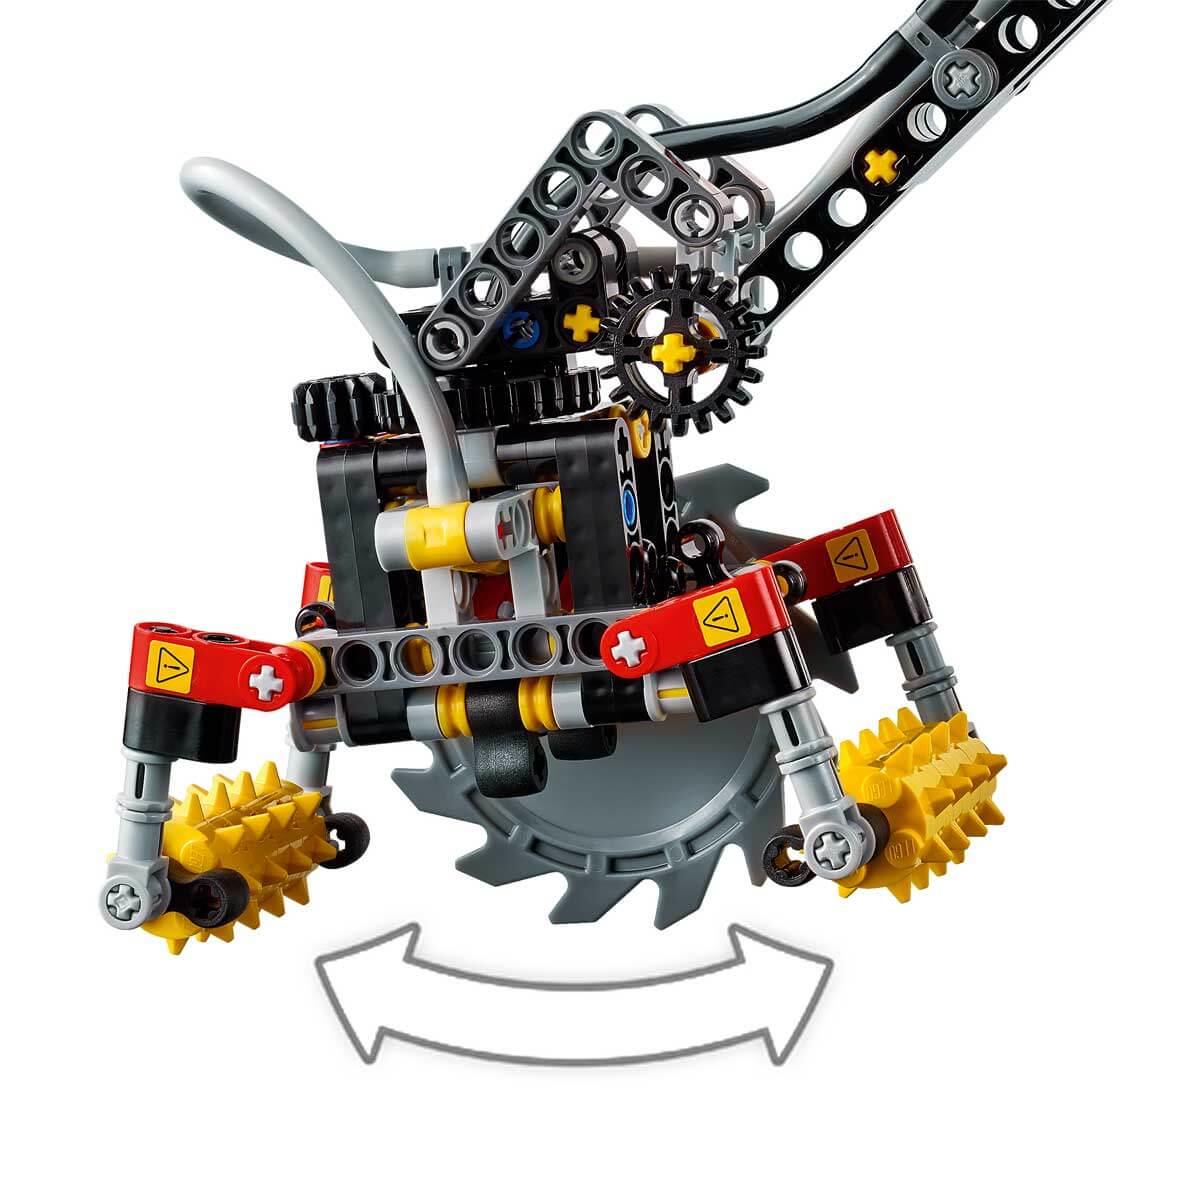 LEGO Technic 42080 Orman Makinesi Satın Al